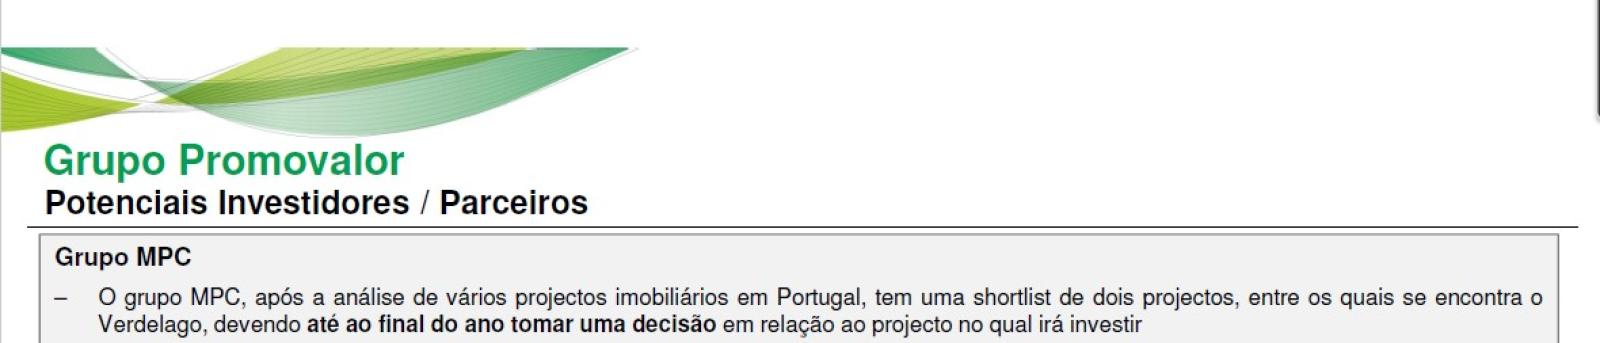 Documento do BESI, que analisa o grupo Promovalor e revela que o grupo alemão MPC foi um potencial investidor no empreendimento de Luís Filipe Vieira. 